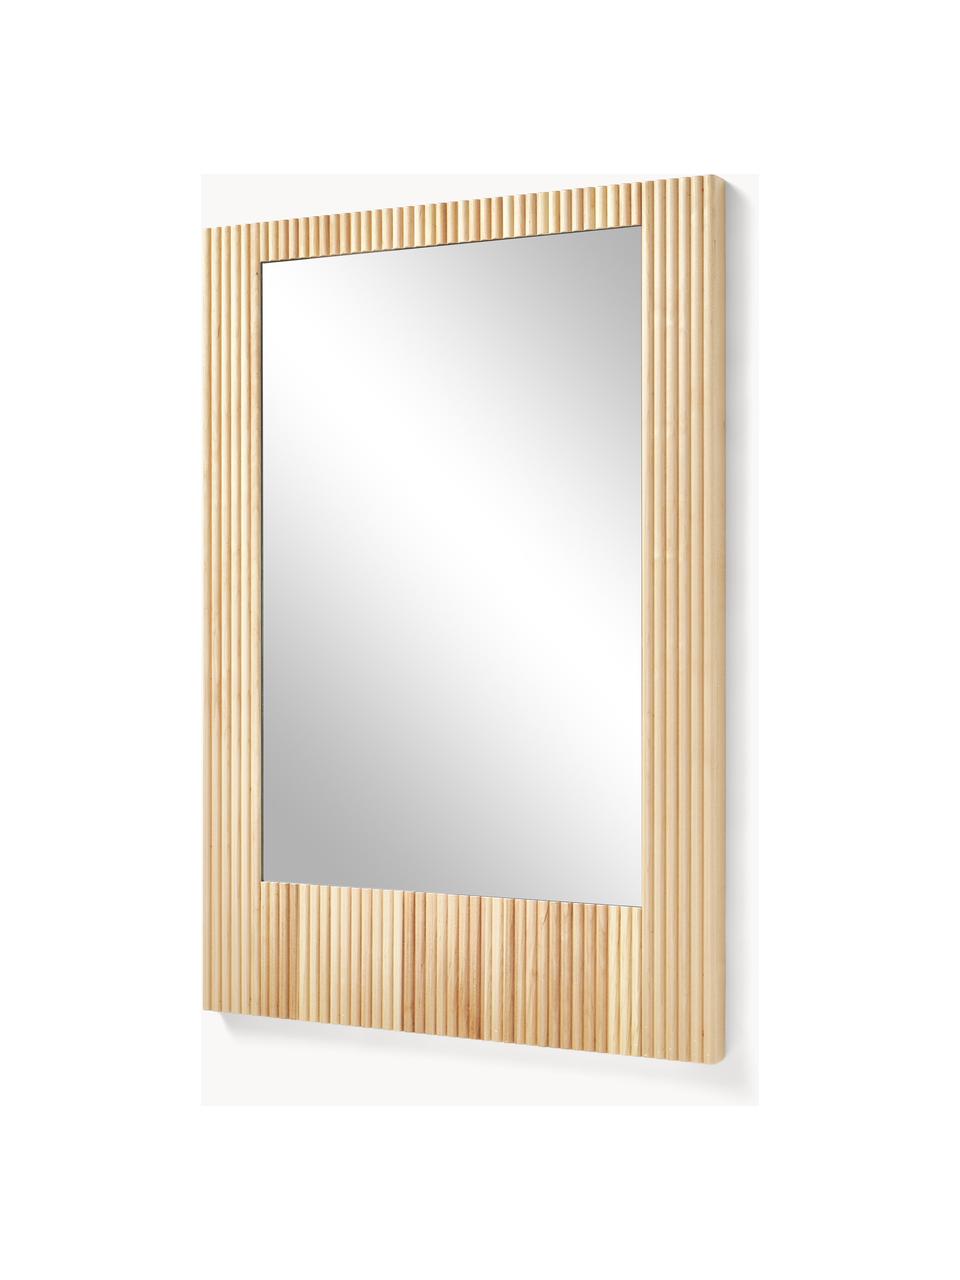 Specchio con cornice, da parete, fatto artigianalmente in legno.